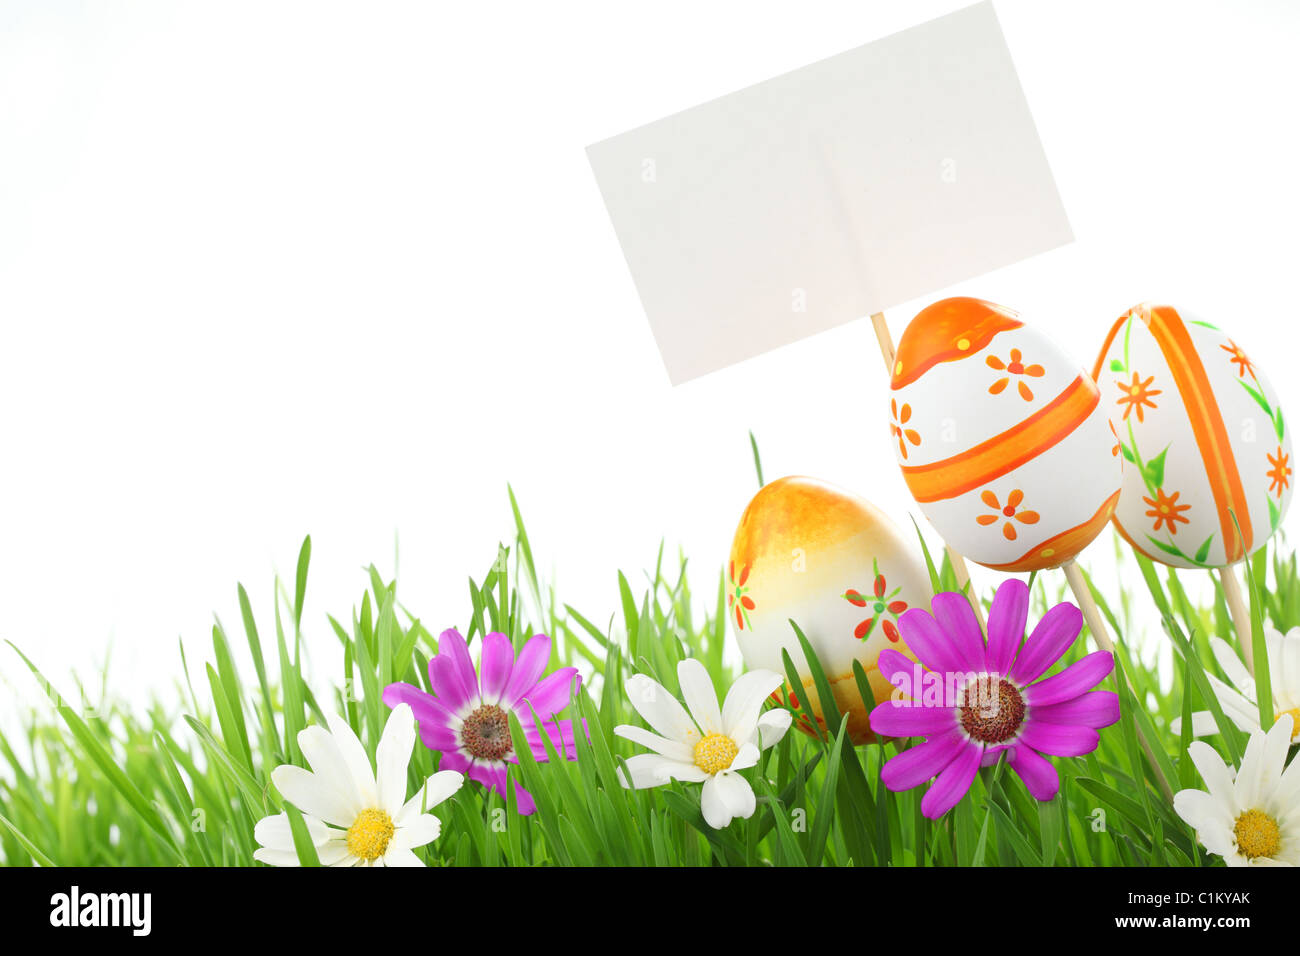 Les oeufs de Pâques jolie daisy,avec carte vierge sur l'herbe verte fraîche. Banque D'Images